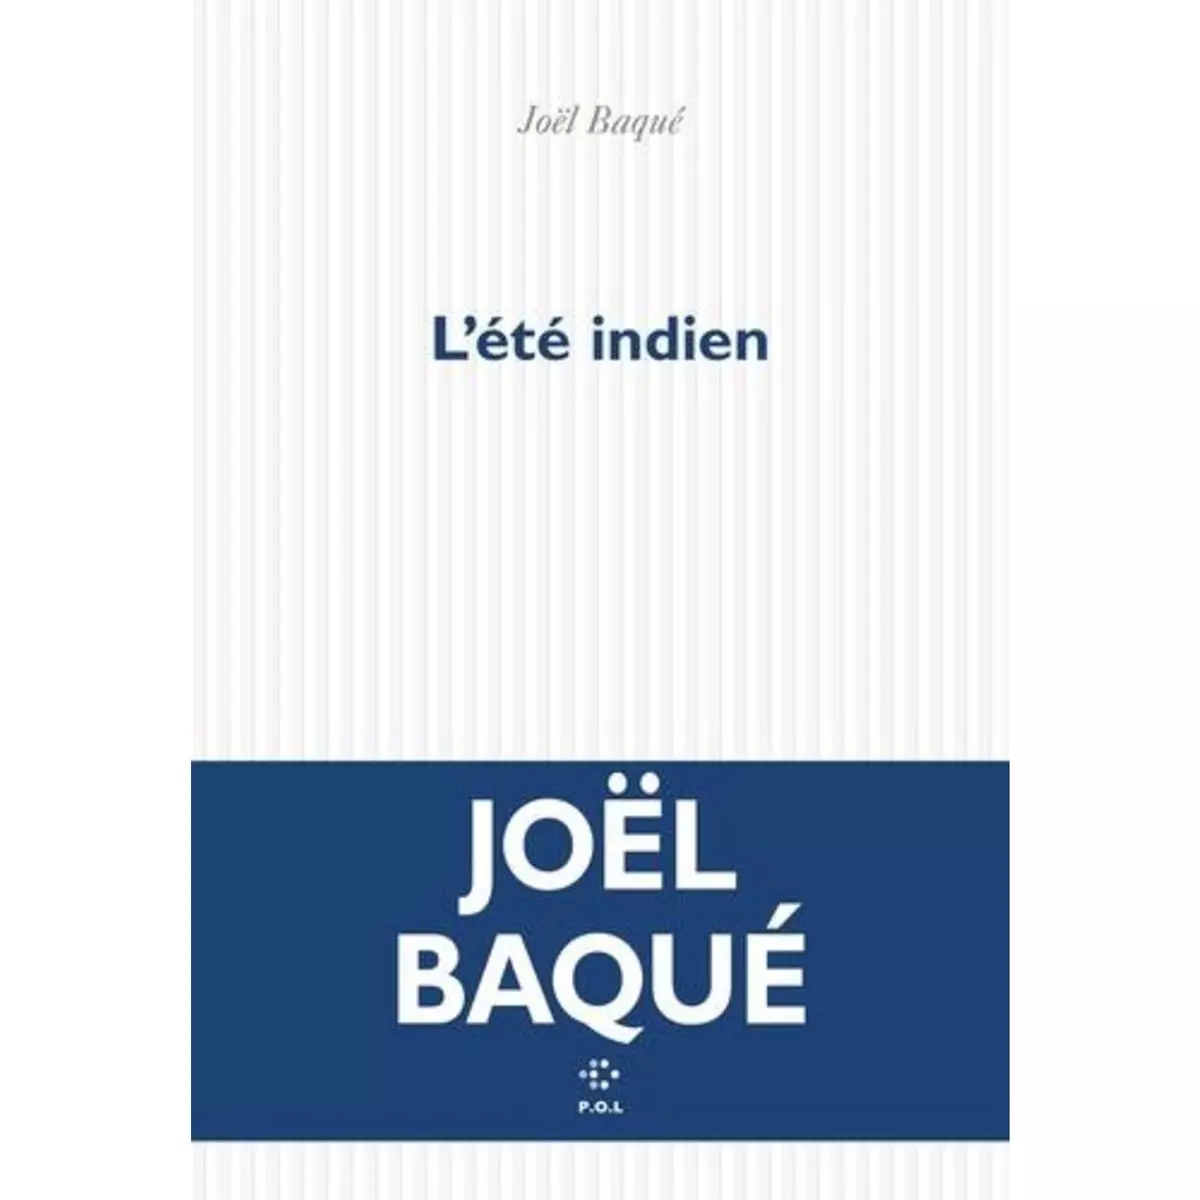  L'ETE INDIEN, Baqué Joël